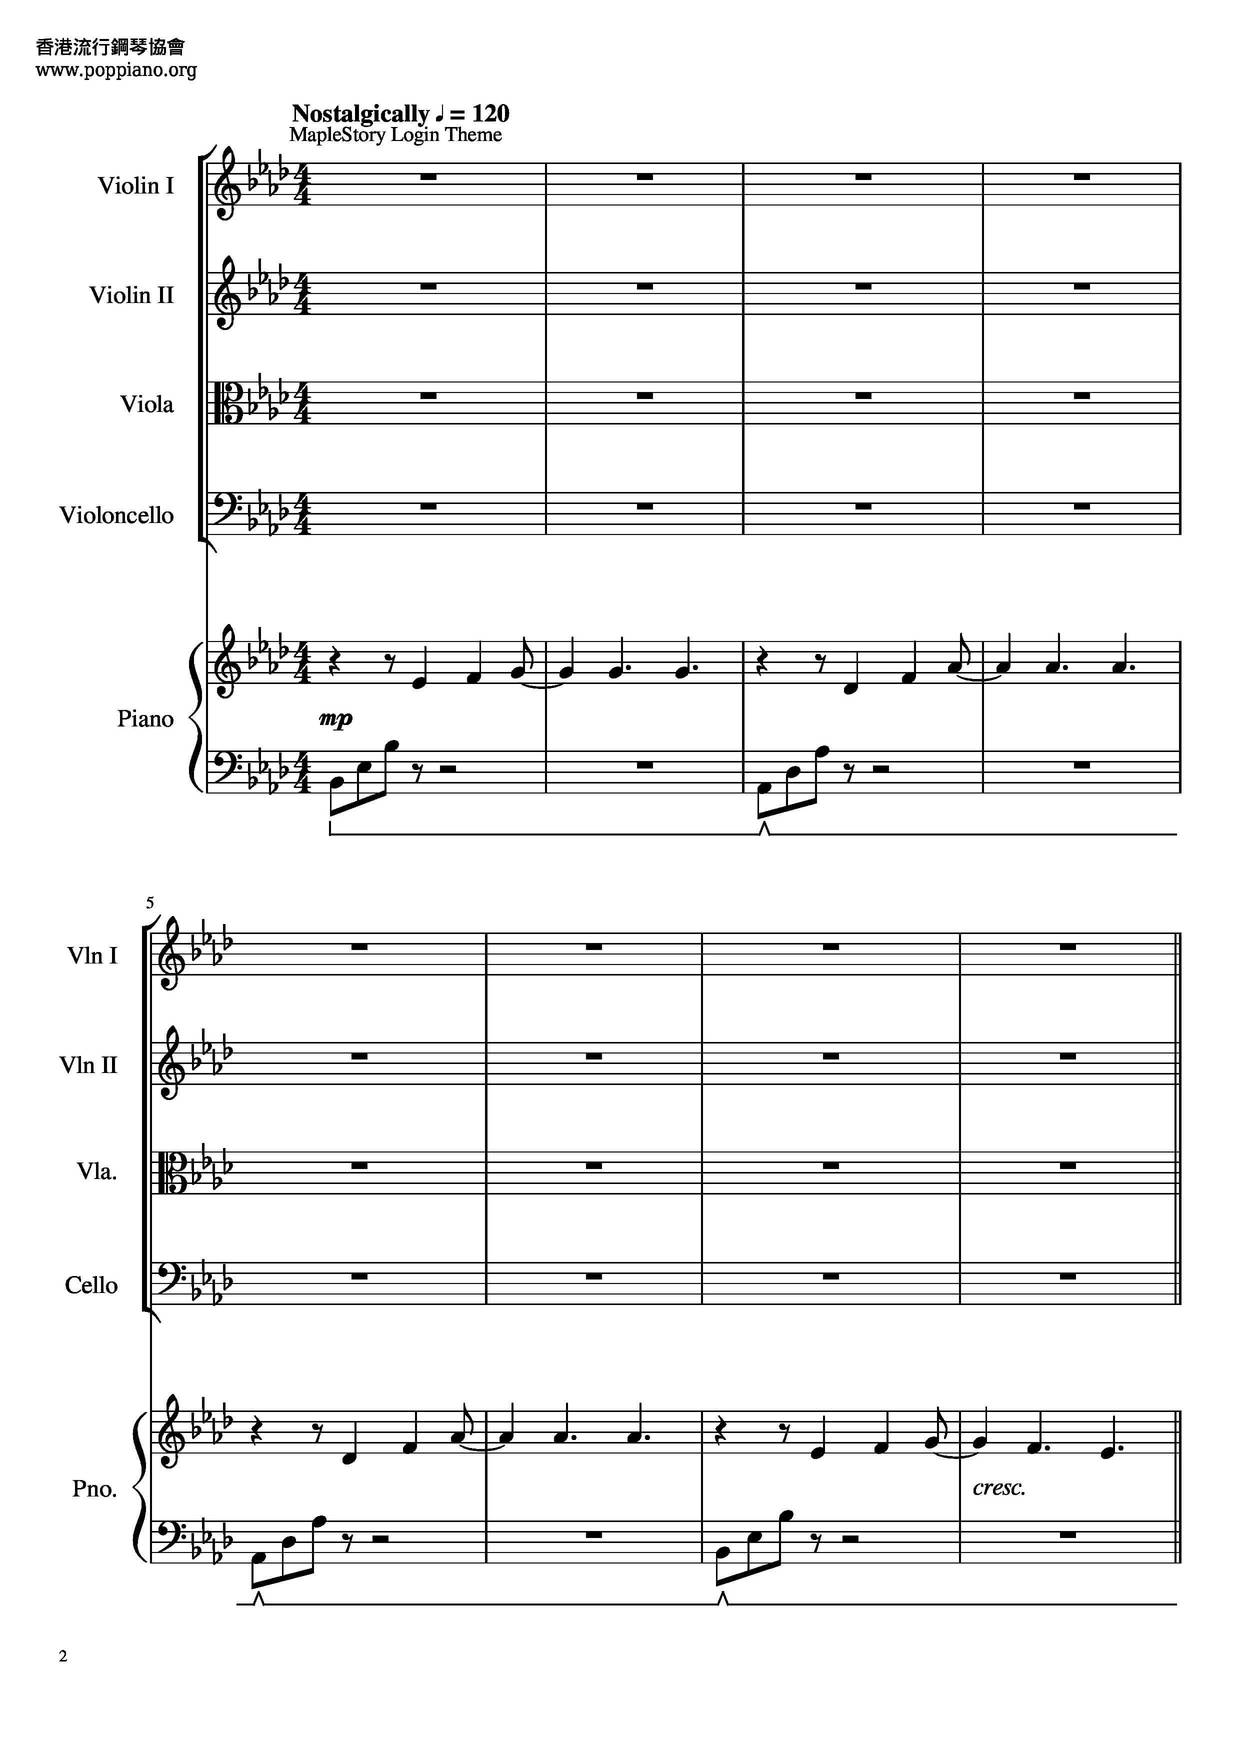 MapleStory Medley Score